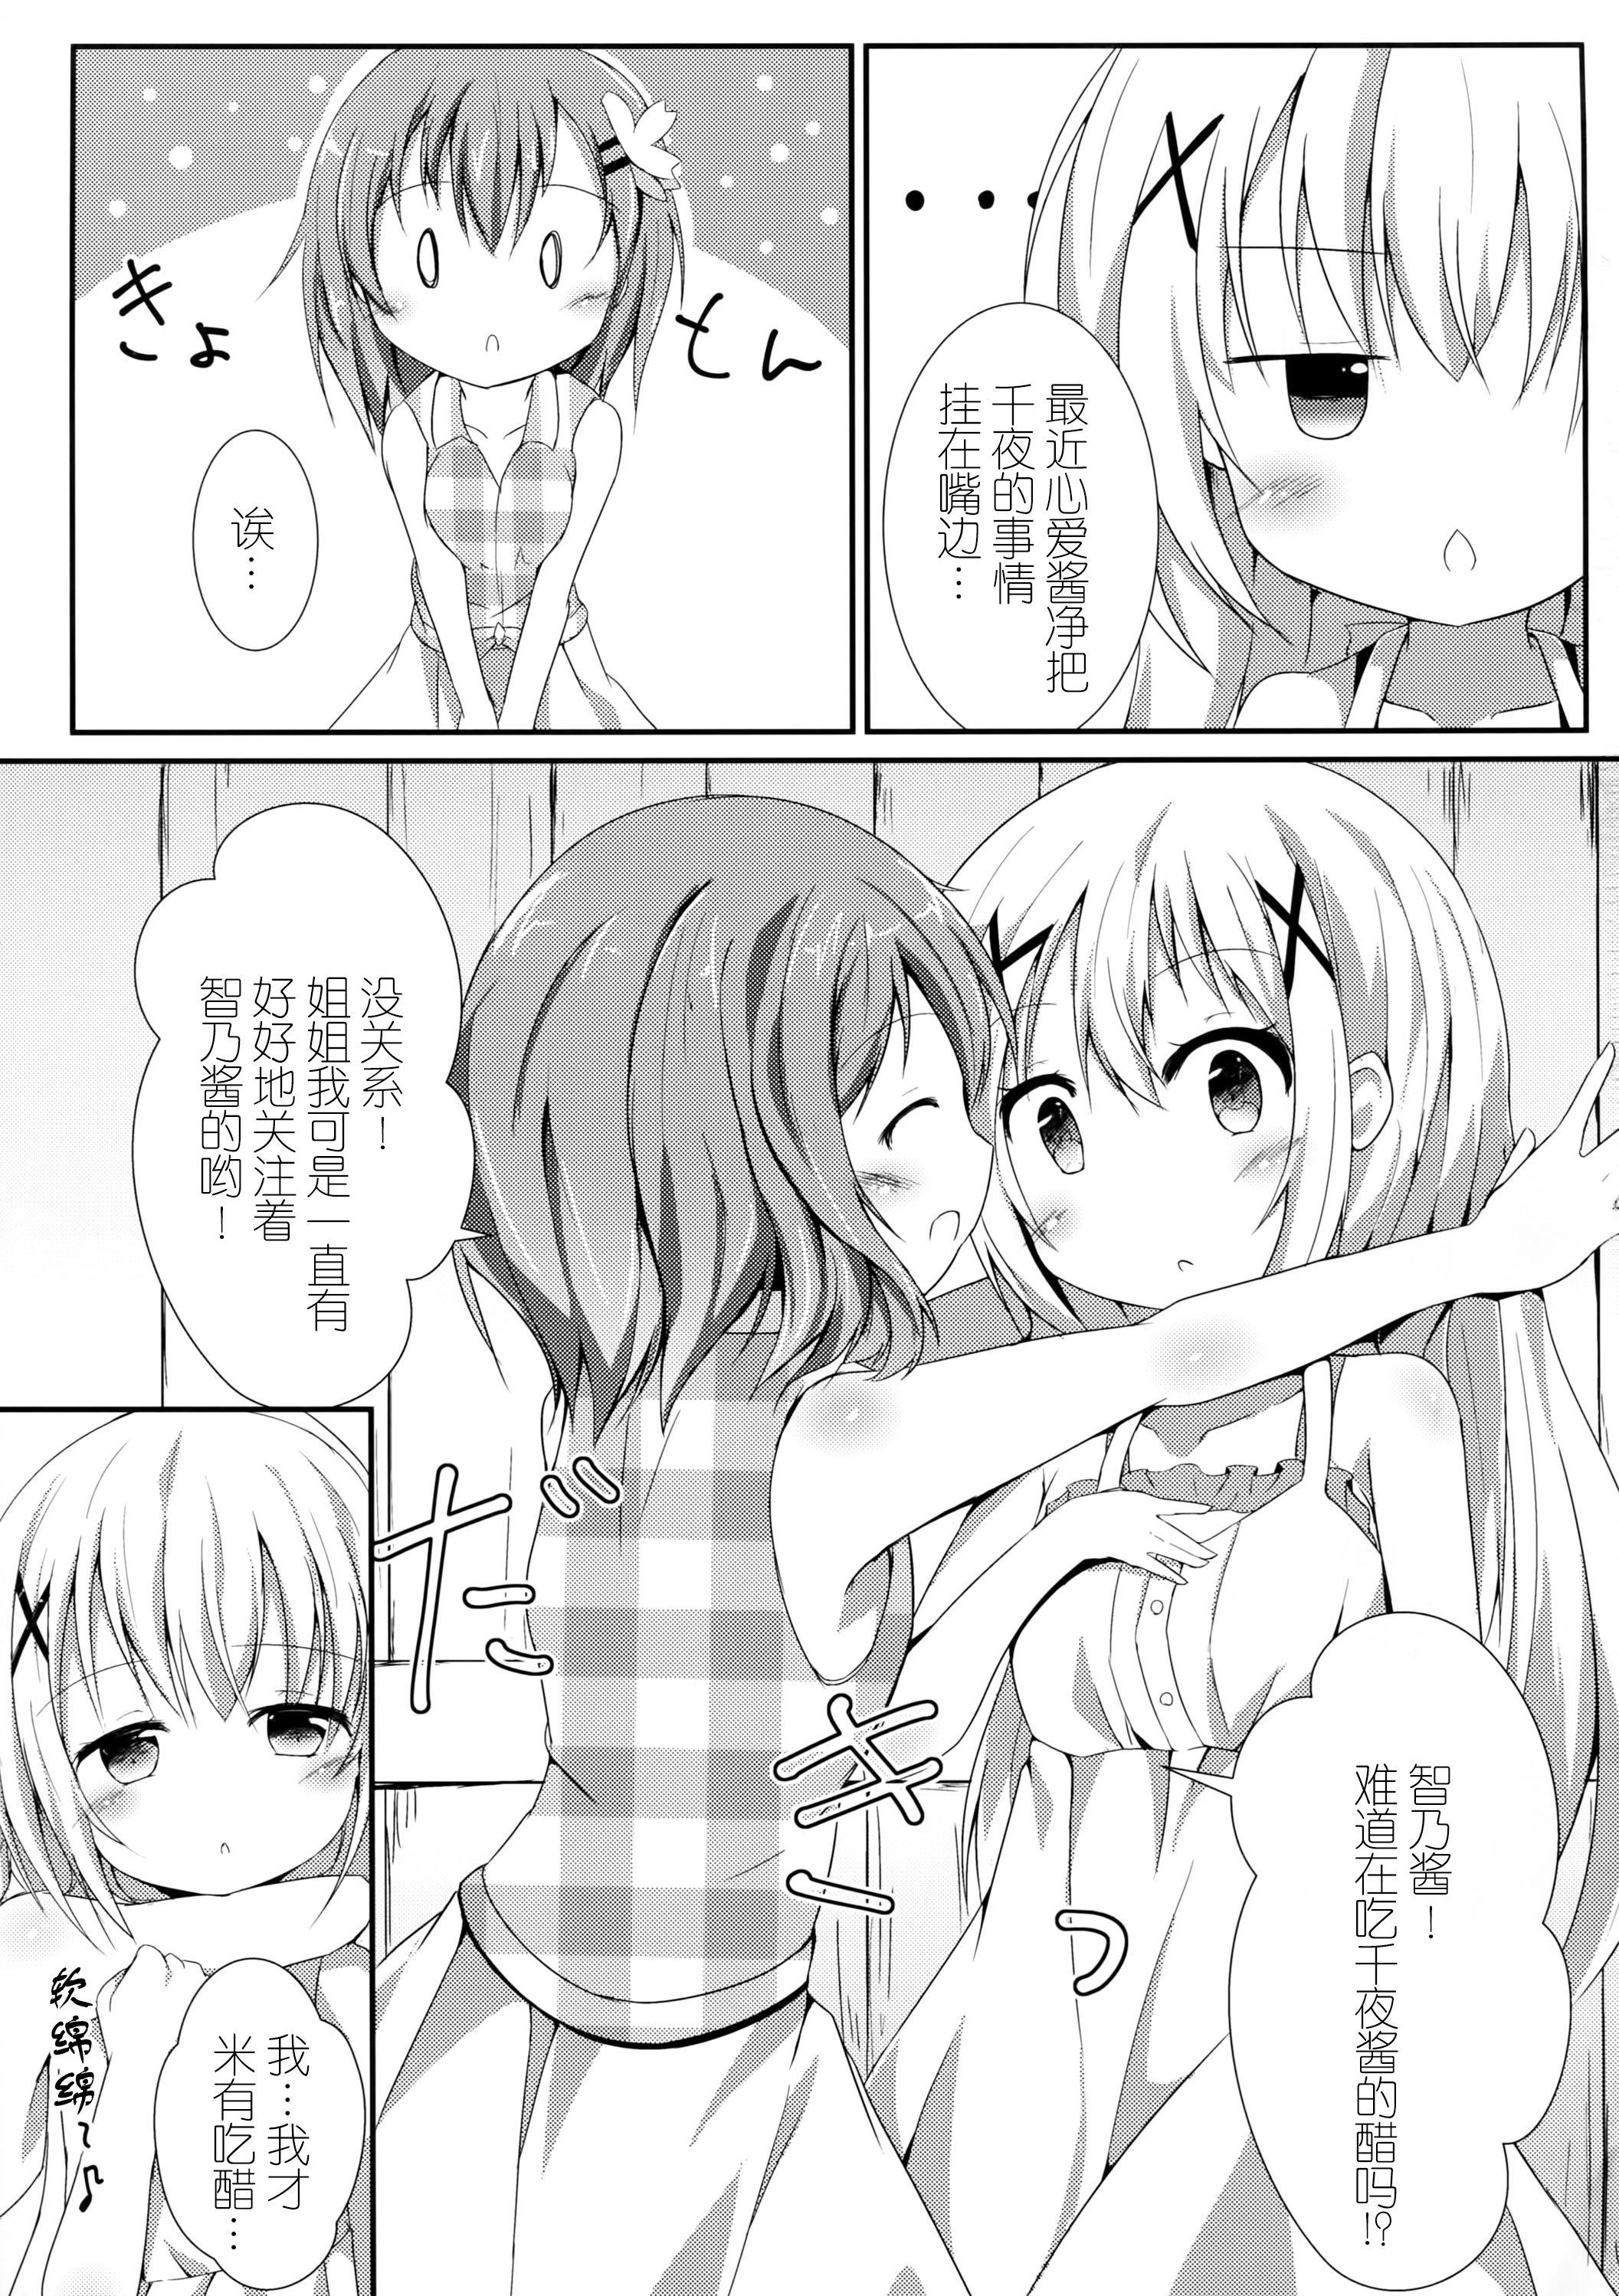 Sexo Sister or Not Sister?? - Gochuumon wa usagi desu ka Face - Page 5